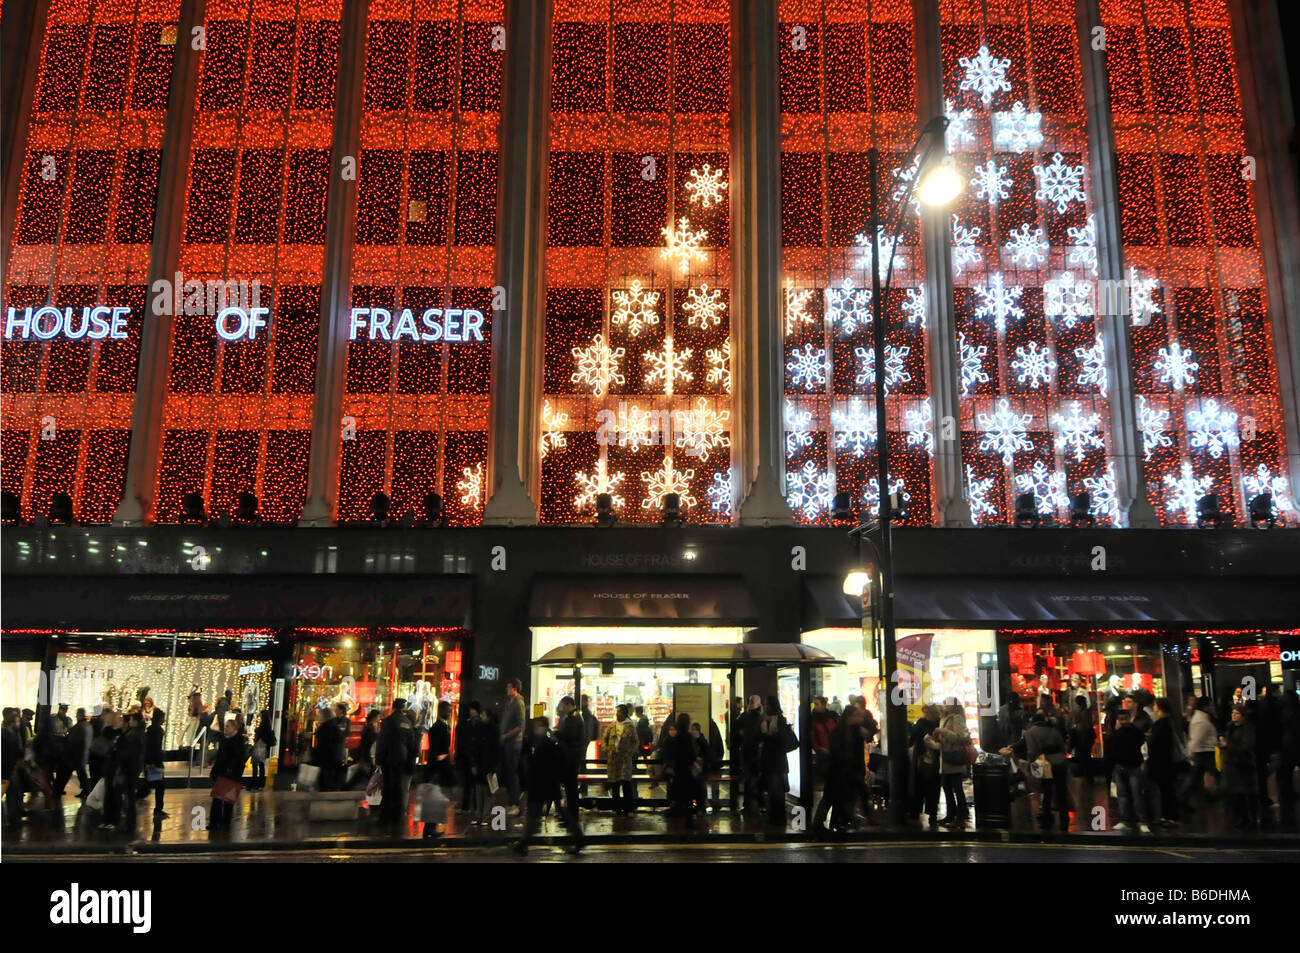 House of Fraser department store Oxford street avec des lumières de Noël West End London England UK Banque D'Images